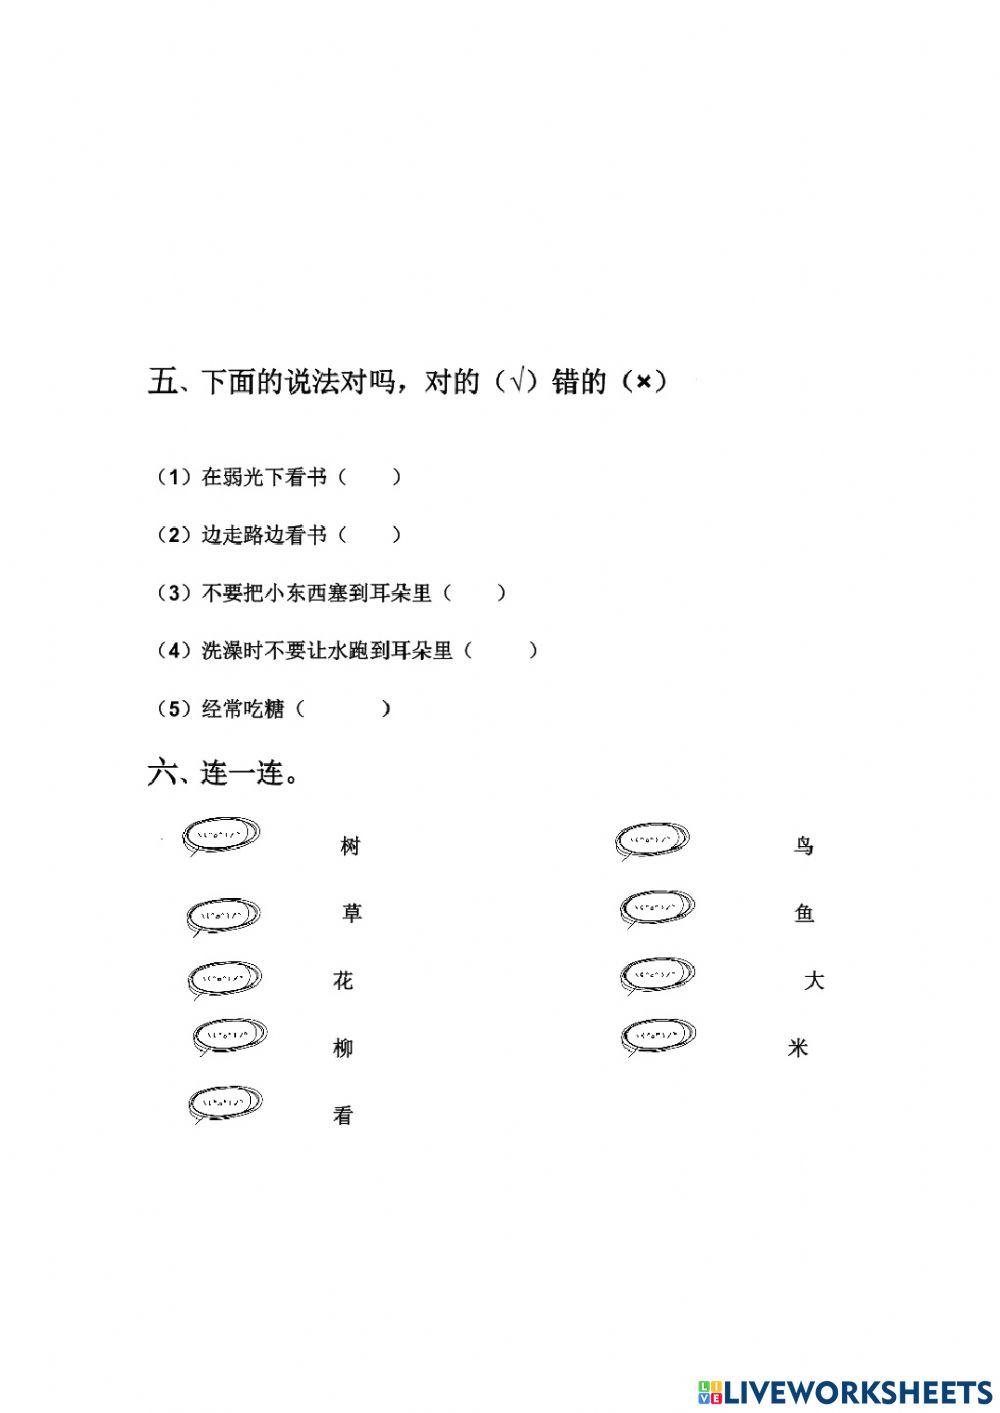 สอบภาษาจีน